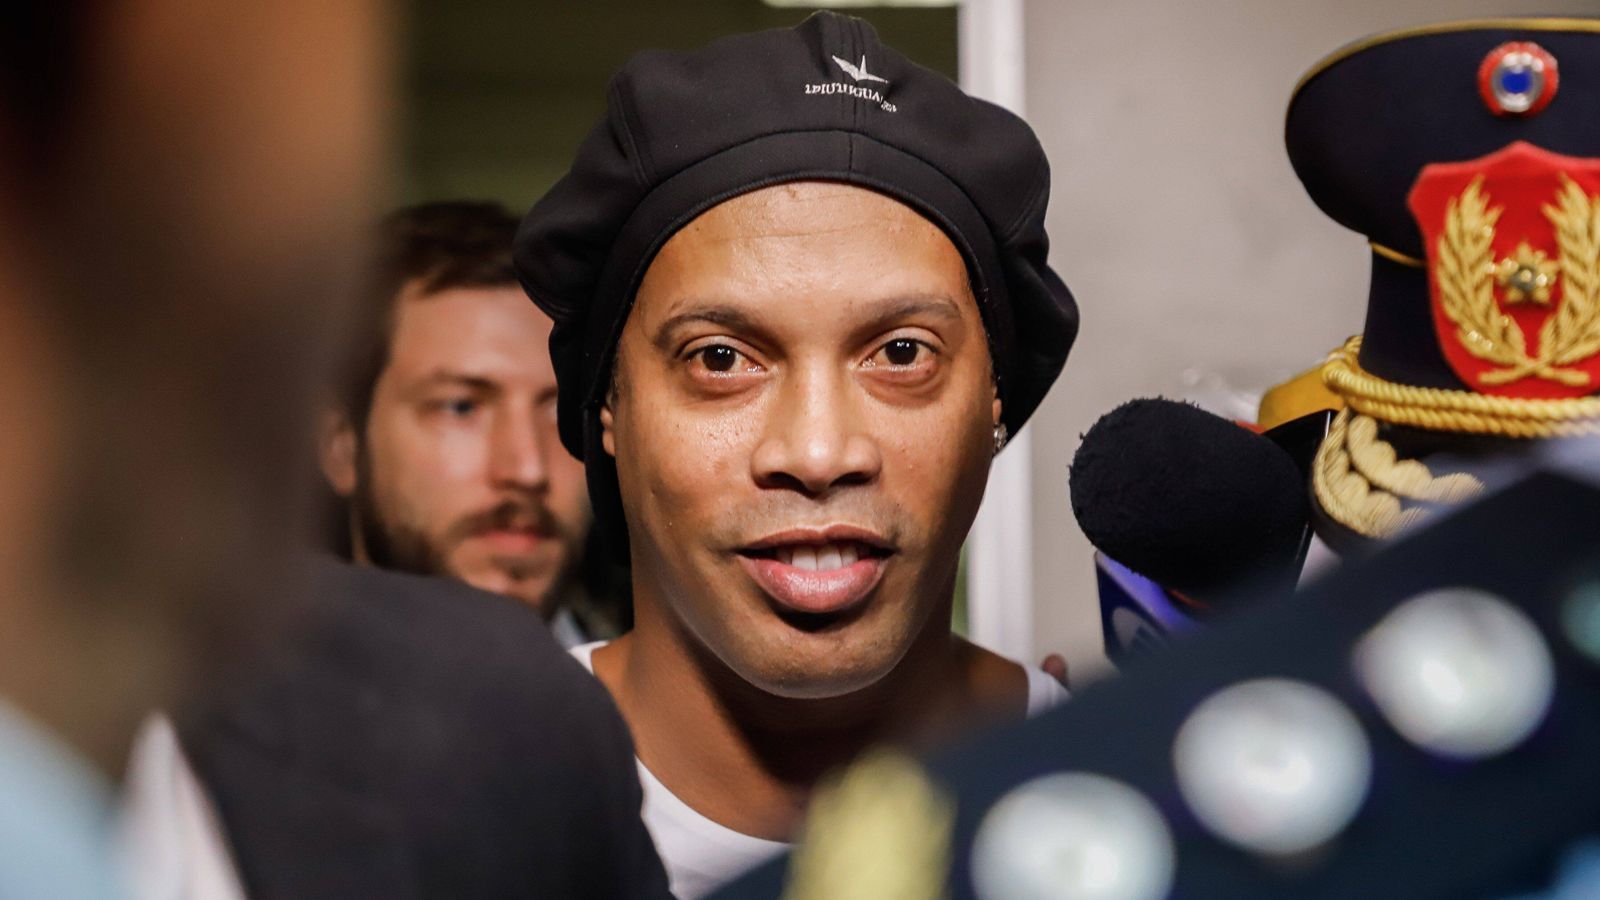 
                <strong>Ronaldinho</strong><br>
                Wegen der Einreise nach Paraguay mit gefälschten Papieren kam der frühere Weltfußballer Ronaldinho 2020 vorübergehend in Untersuchungshaft. Nach einem Monat durfte der Ex-Barca-Star das Gefängnis gegen eine millionenschwere Kautionszahlung verlassen, ging daraufhin in den Hausarrest. Hinter der Verhaftung soll aber deutlich mehr als nur die Einreise mit gefälschten Dokumenten stecken. Berichten zufolge dürfte Ronaldinho in illegale Geschäfte verwickelt gewesen sein. Daher wurden die Ermittlungen auch in Richtung Geldwäsche und Bildung einer kriminellen Vereinigung ausgeweitet. Im Rahmen dieser Ermittlungen wurden letztlich 18 Verdächtige festgenommen, darunter Beamten der Einwanderungsbehörde sowie Polizisten.
              